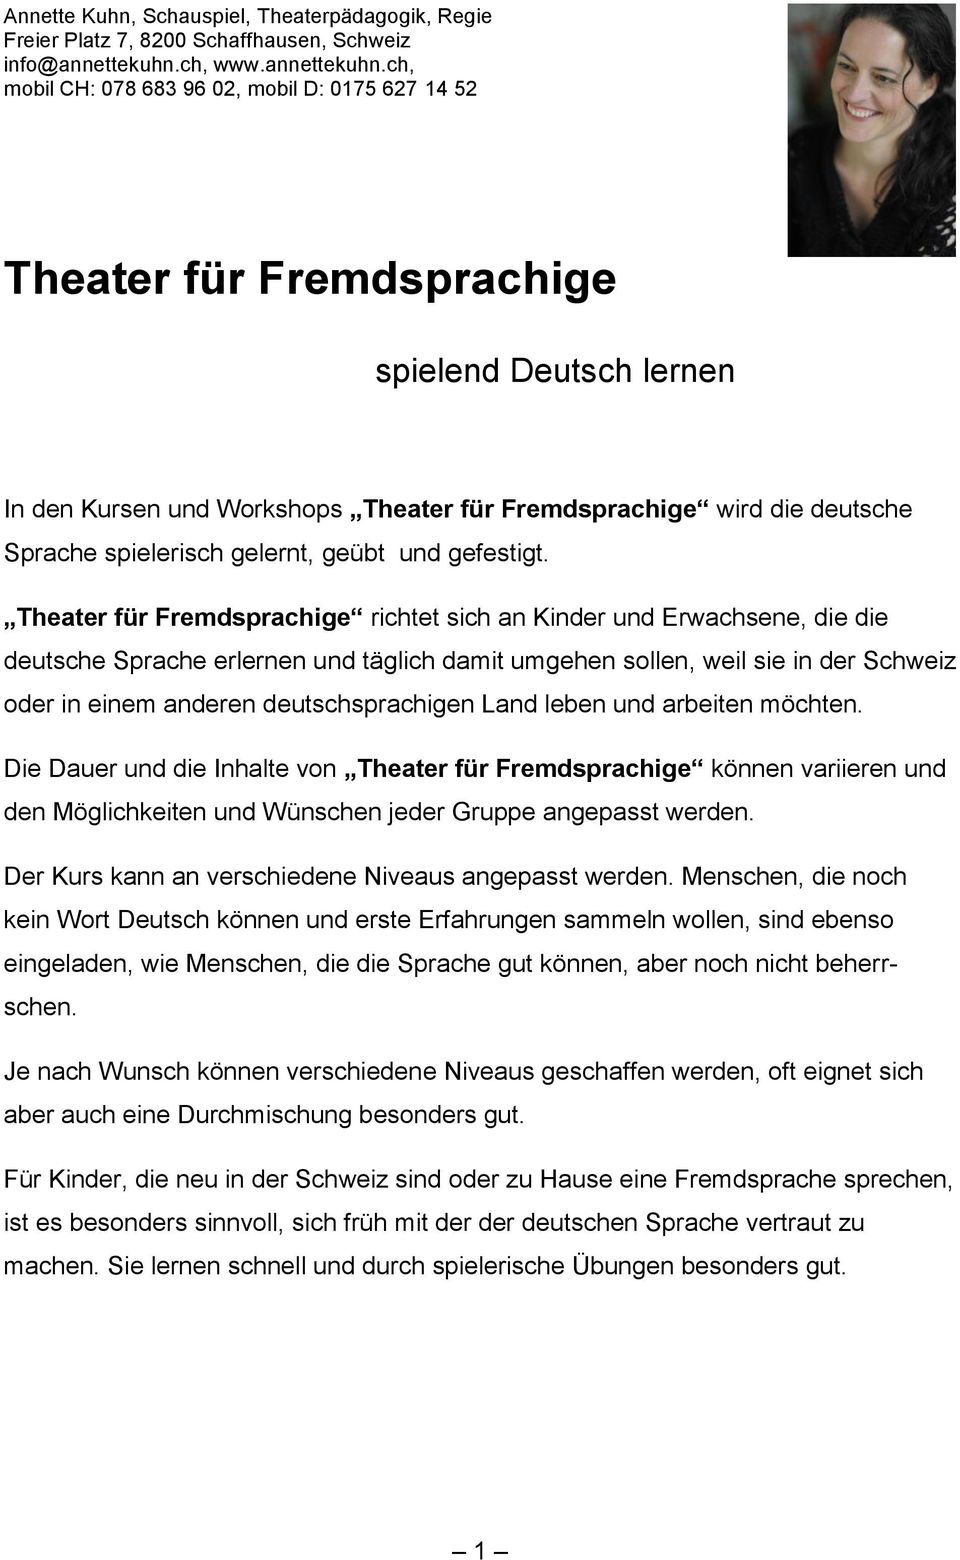 ch, mobil CH: 078 683 96 02, mobil D: 0175 627 14 52 Theater für Fremdsprachige spielend Deutsch lernen In den Kursen und Workshops Theater für Fremdsprachige wird die deutsche Sprache spielerisch